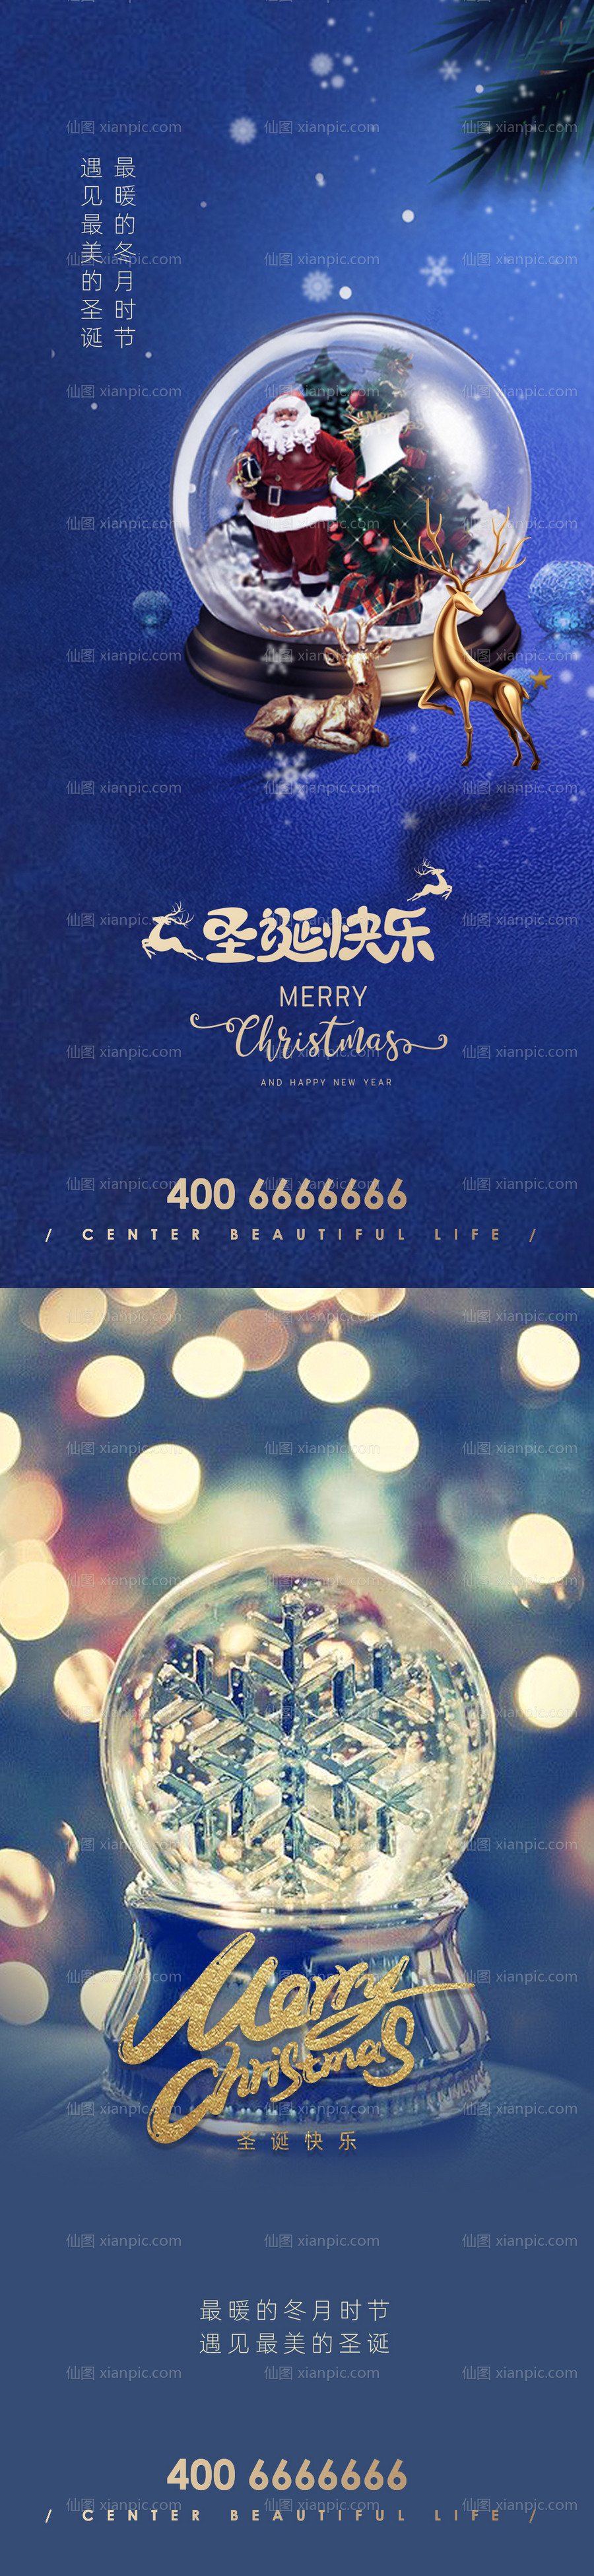 素材乐-圣诞节水晶球系列海报